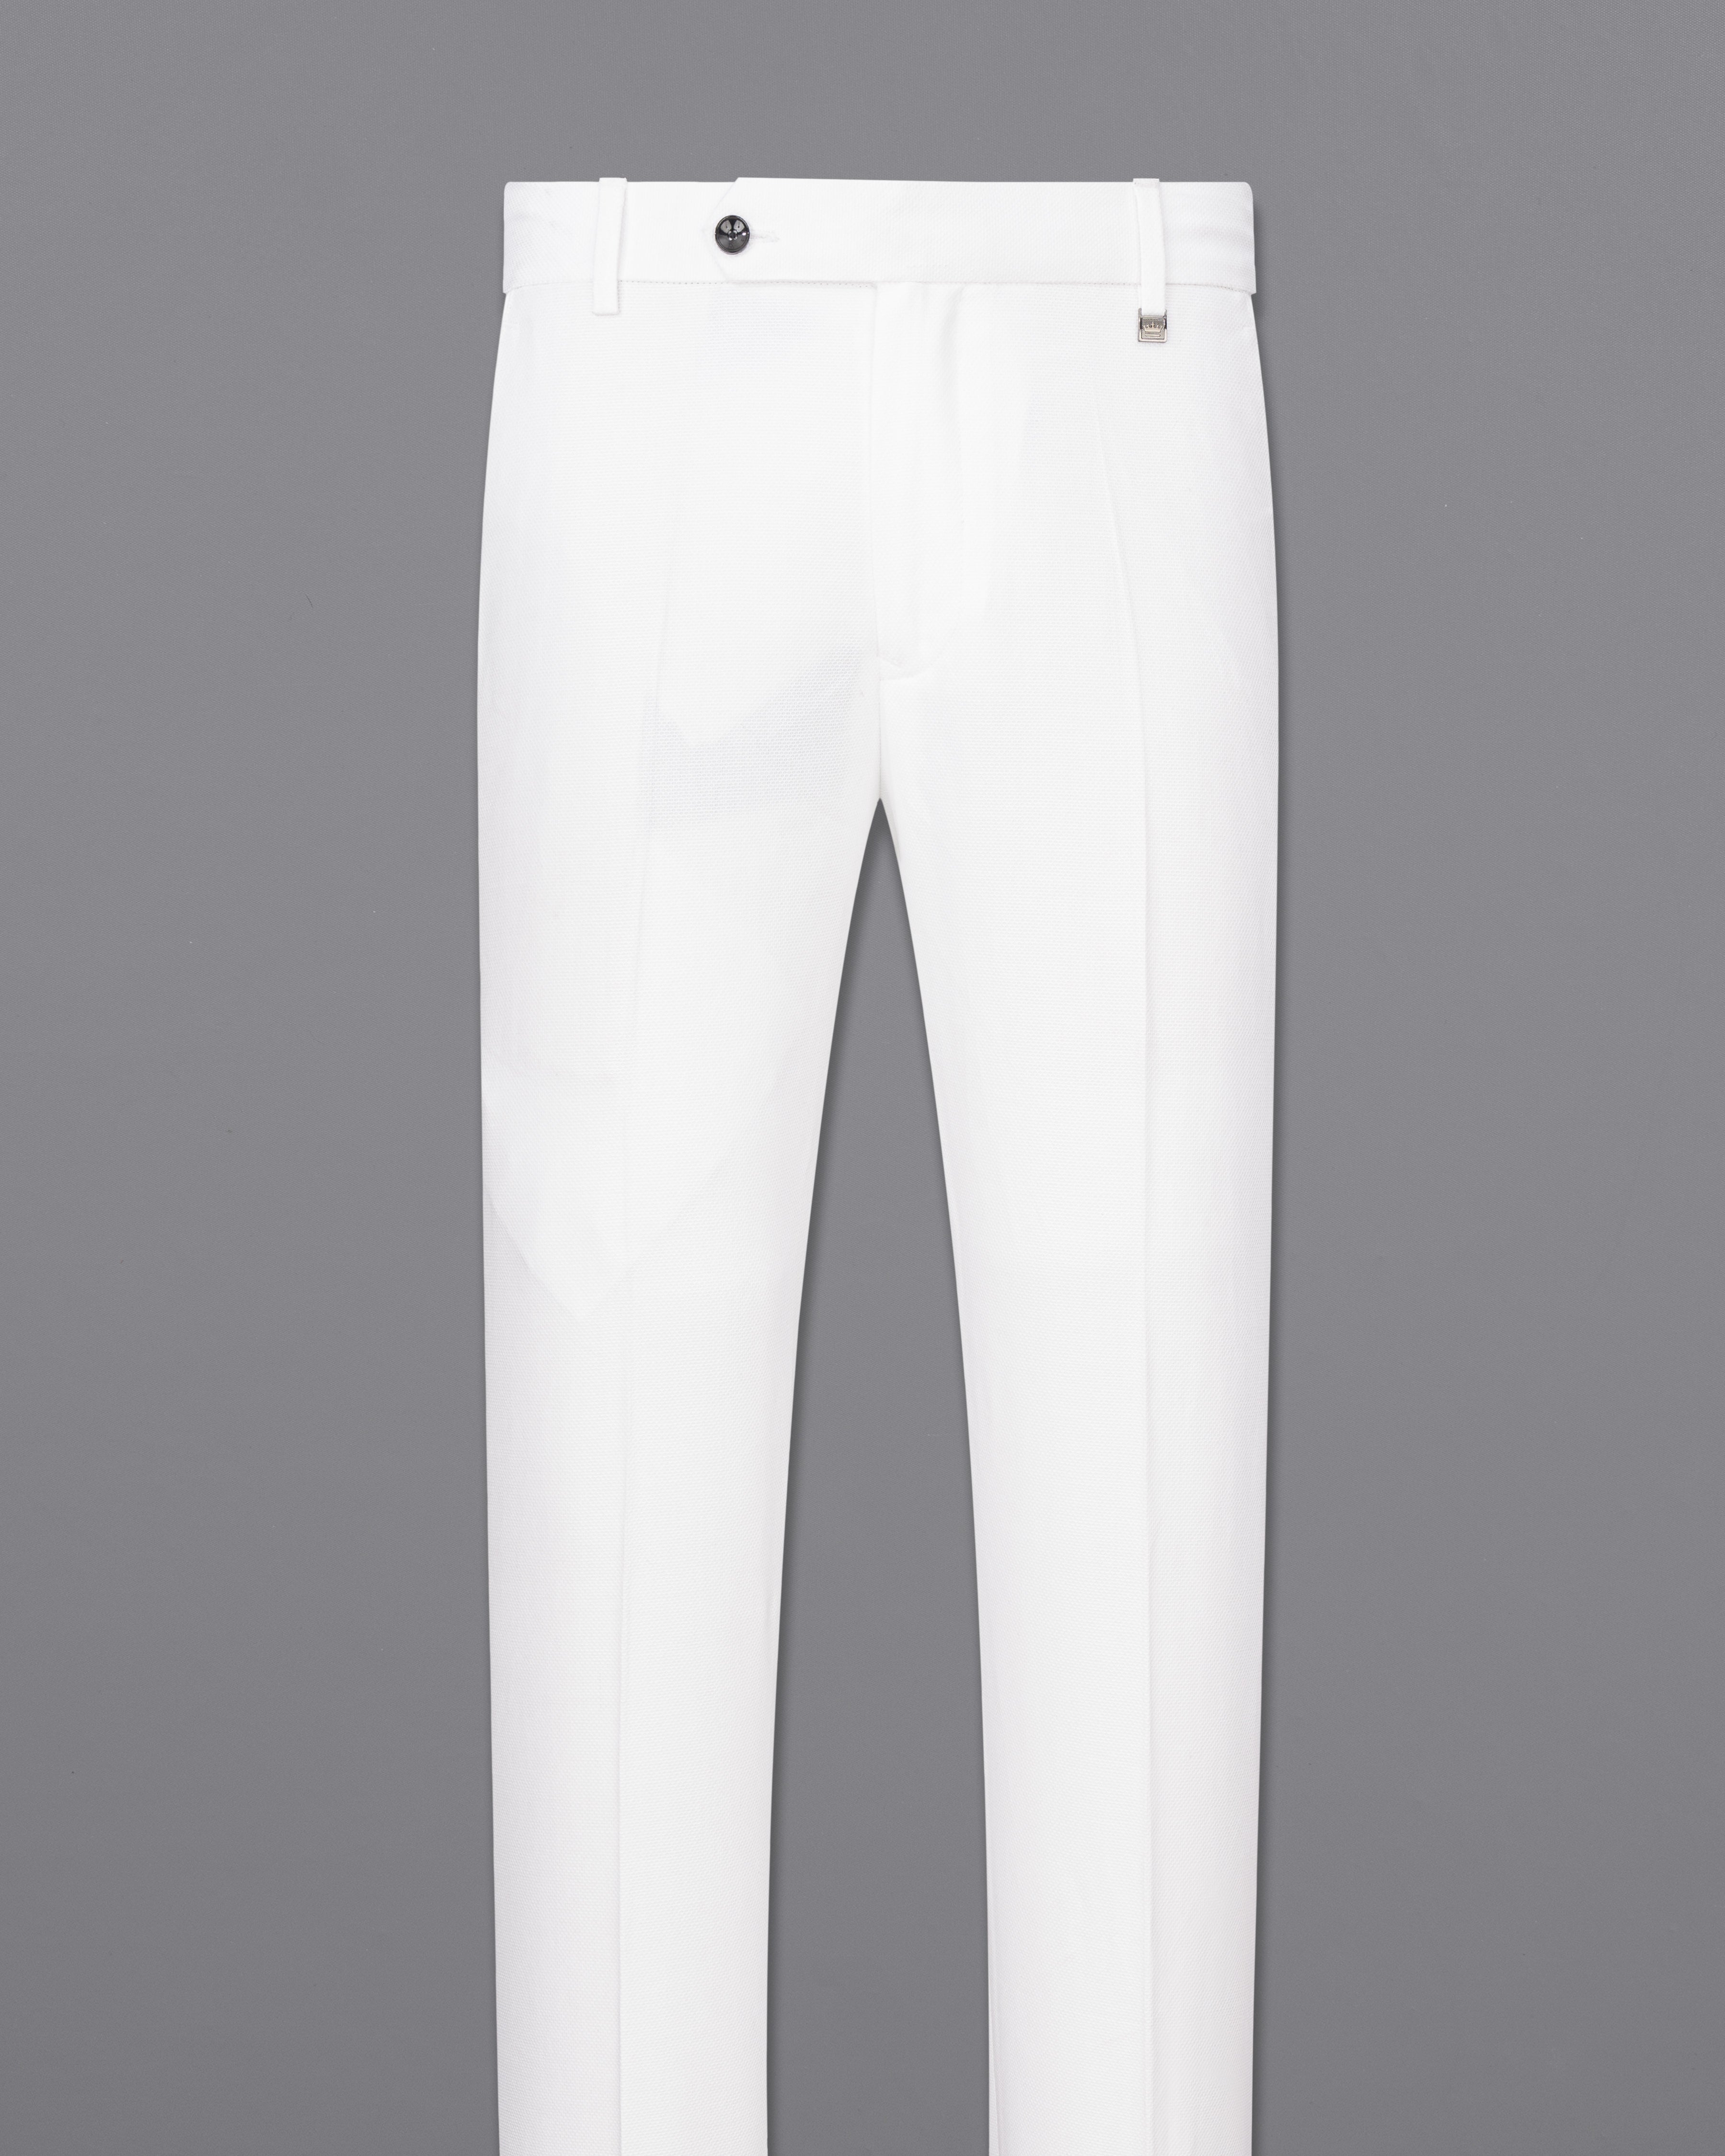 Bright White Cross Buttoned Premium Cotton Bandhgala Suit ST2487-CBG3-36, ST2487-CBG3-38, ST2487-CBG3-40, ST2487-CBG3-42, ST2487-CBG3-44, ST2487-CBG3-46, ST2487-CBG3-48, ST2487-CBG3-50, ST2487-CBG3-52, ST2487-CBG3-54, ST2487-CBG3-56, ST2487-CBG3-58, ST2487-CBG3-60